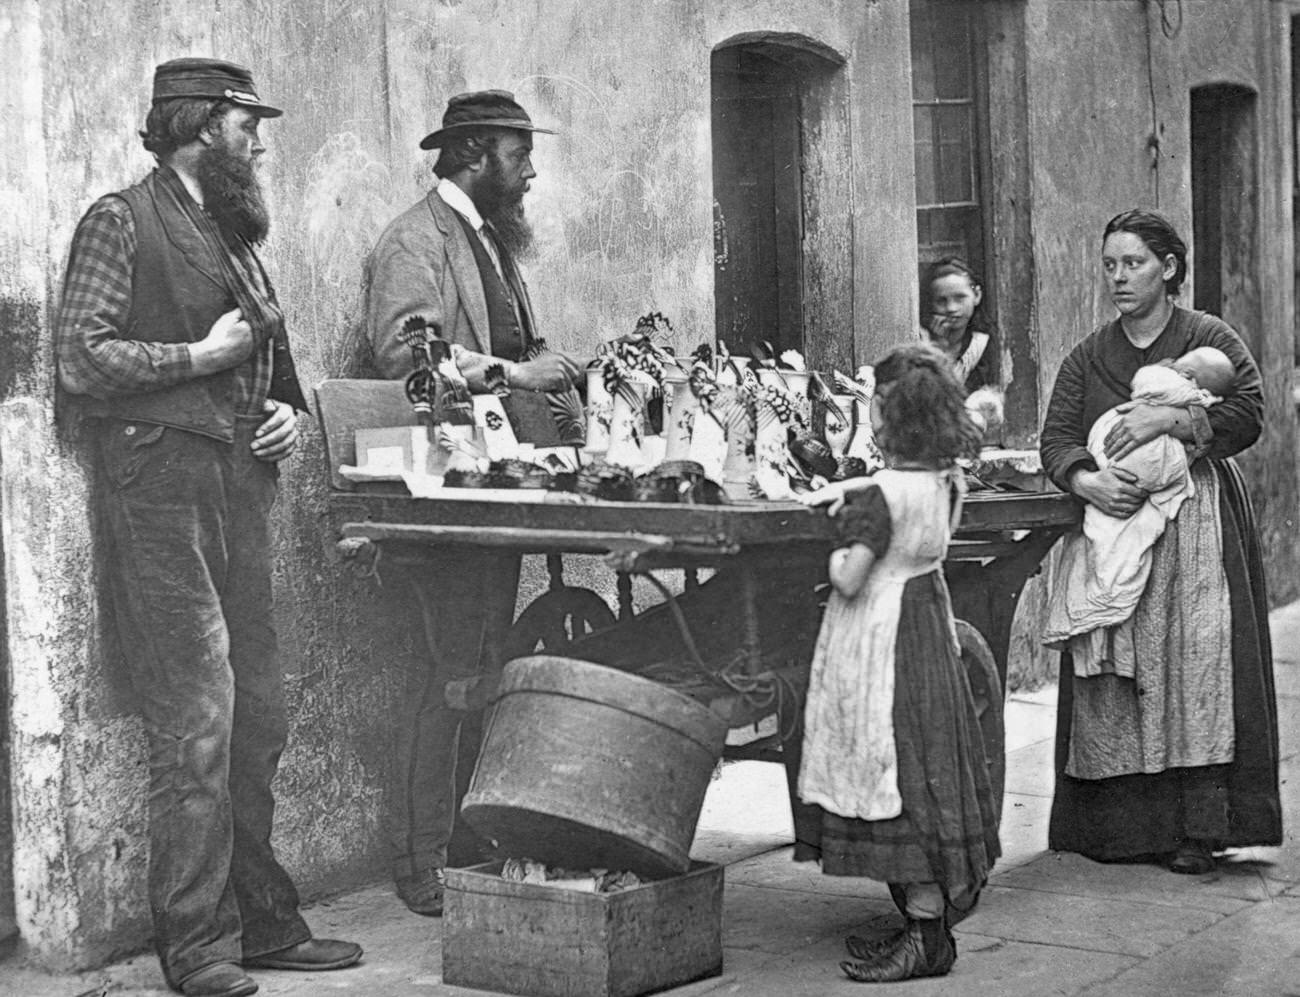 Victorian fancy wear dealer selling ornaments from his barrow, 1877.